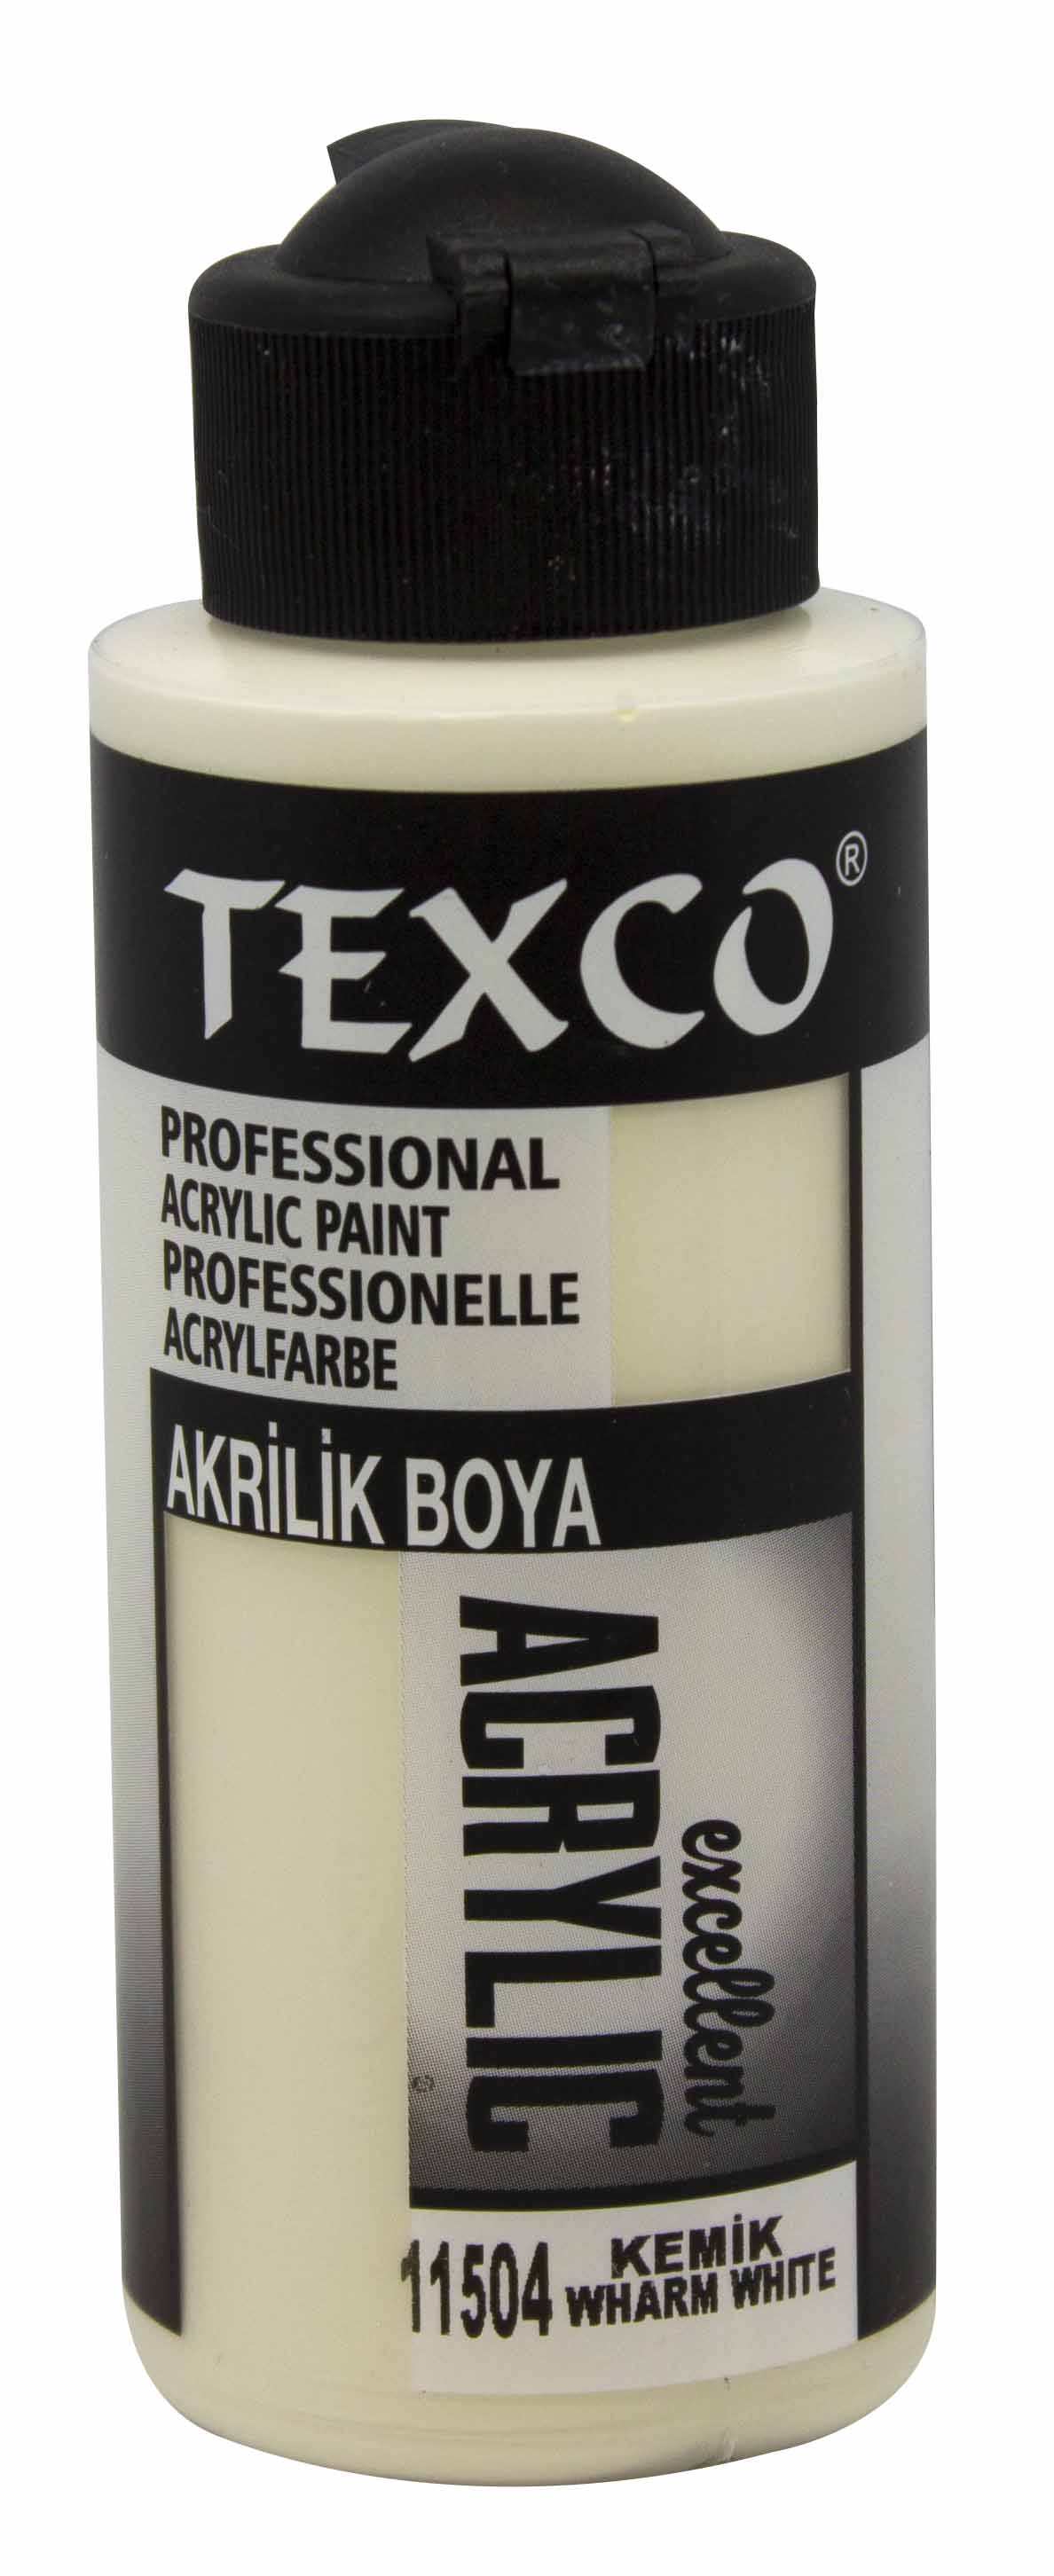 Texco Excellent Akrilik Boya 11504-Kemik 110 cc